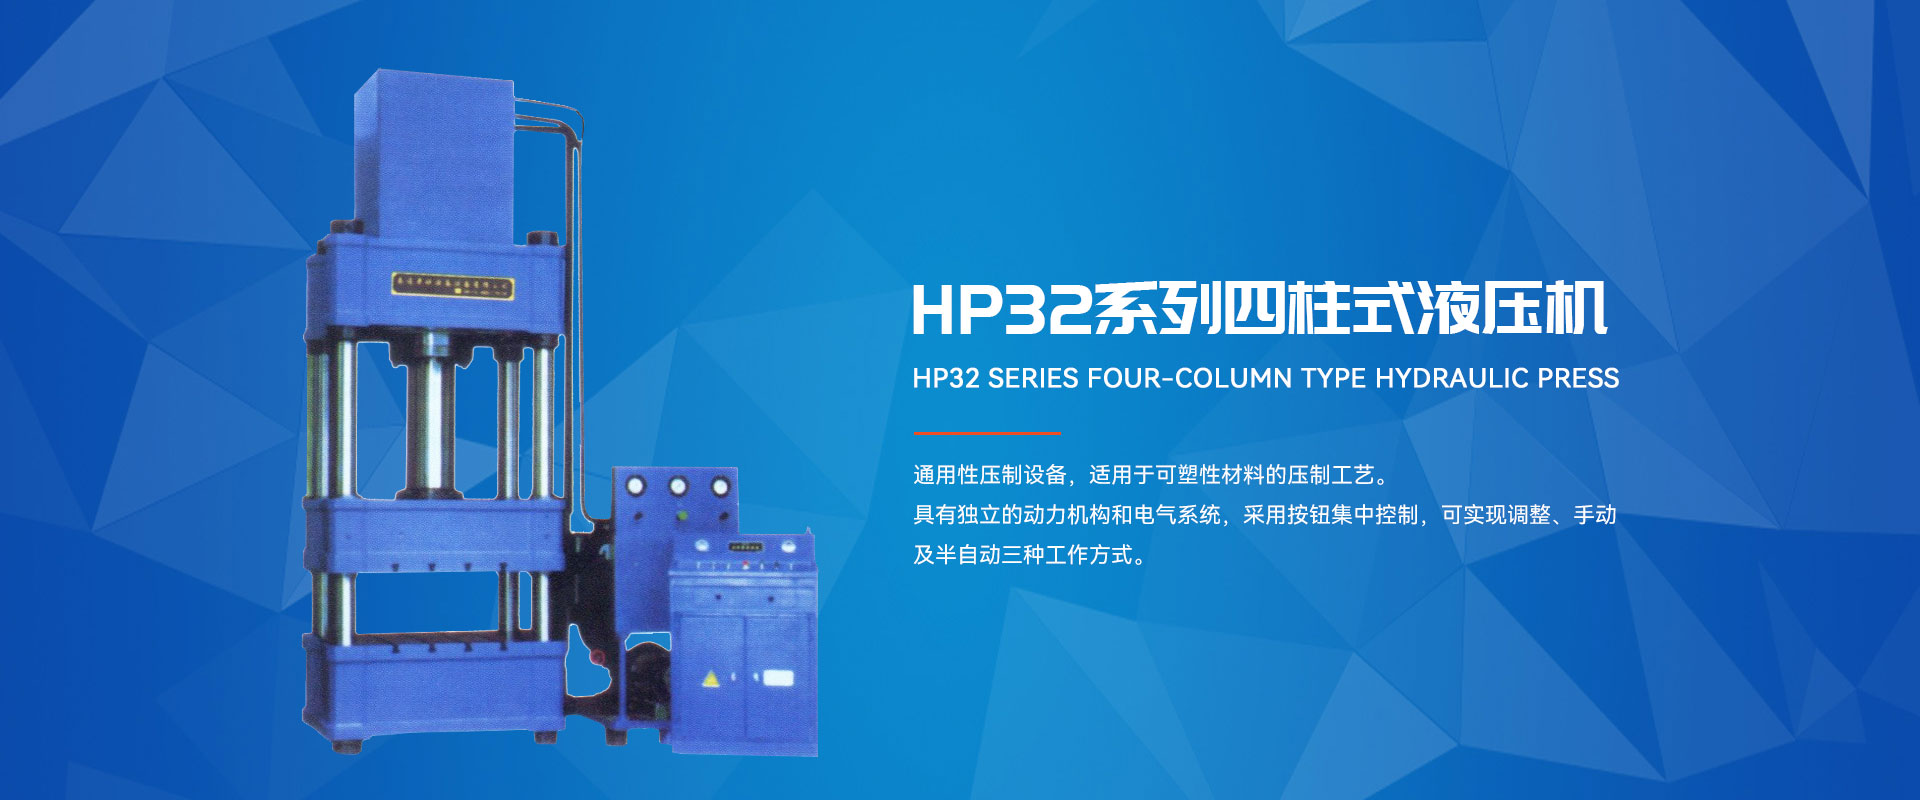 HP32系列四柱式液壓機